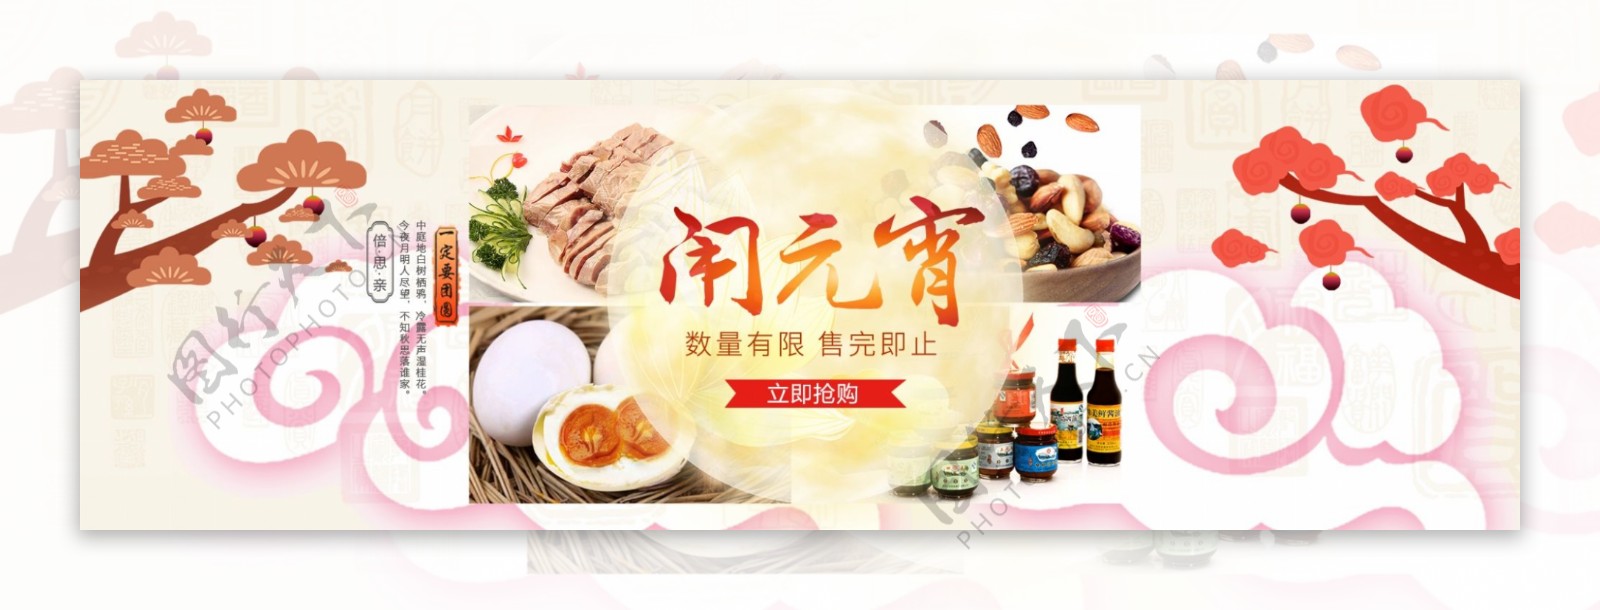 电商淘宝元宵节食品零食海报banner